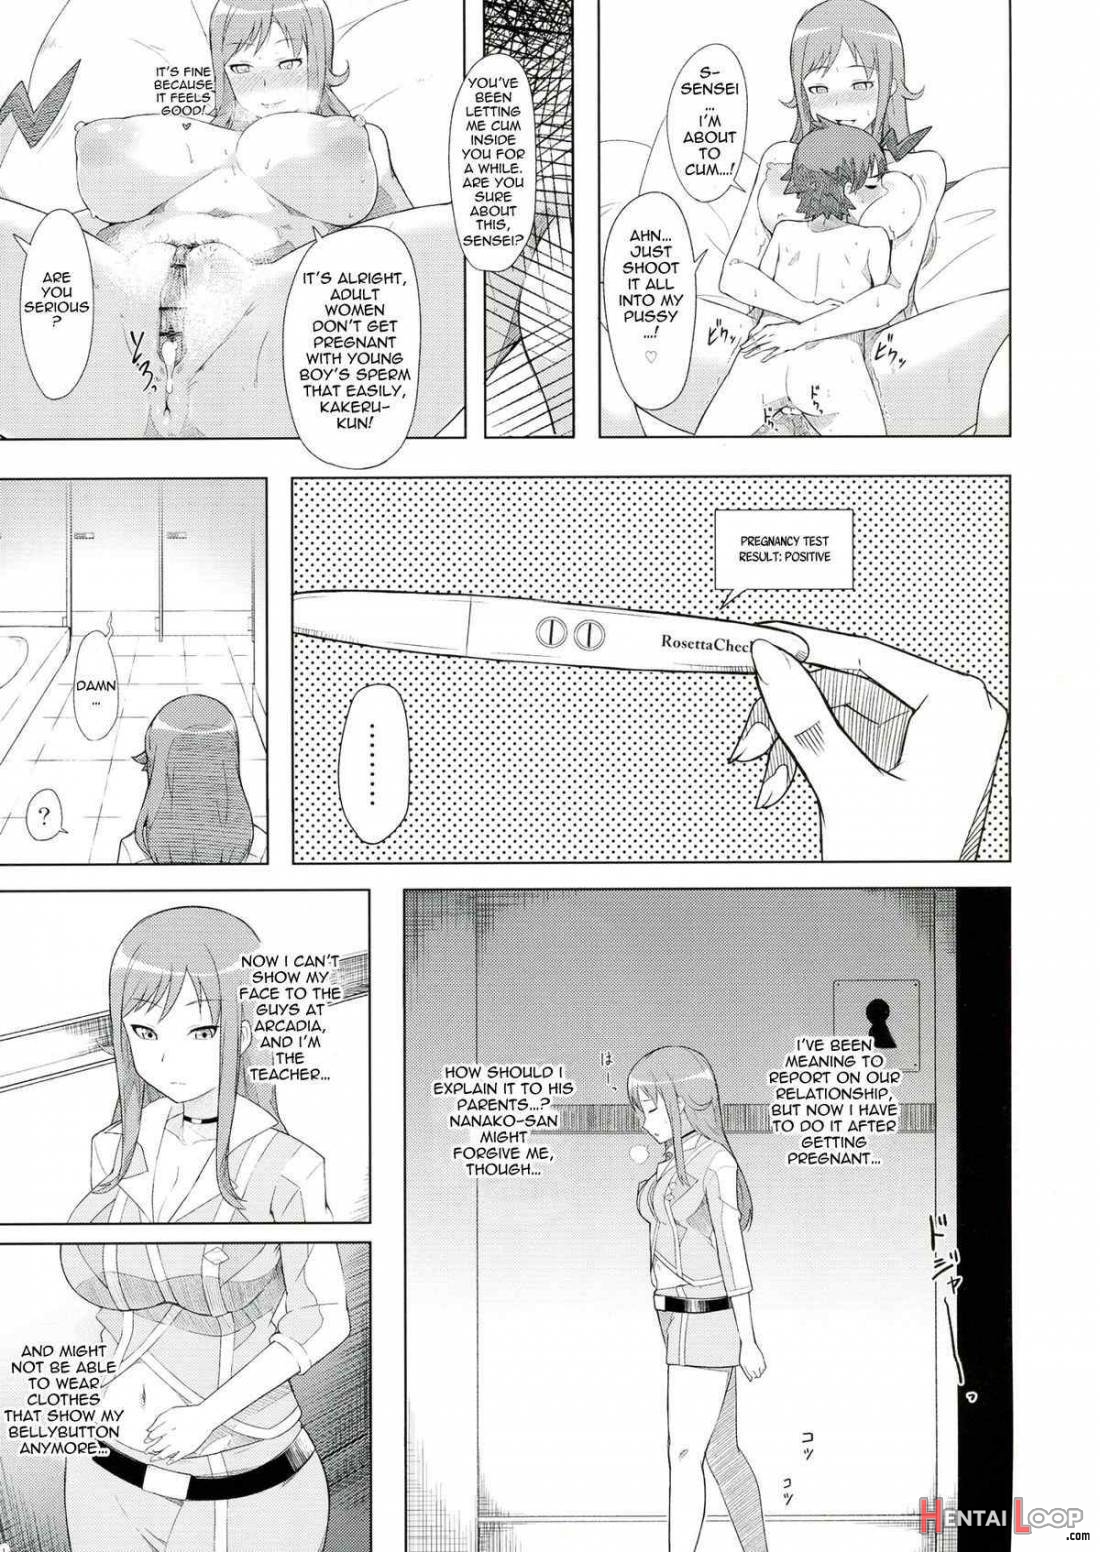 Naedoko Rui-sensei page 2